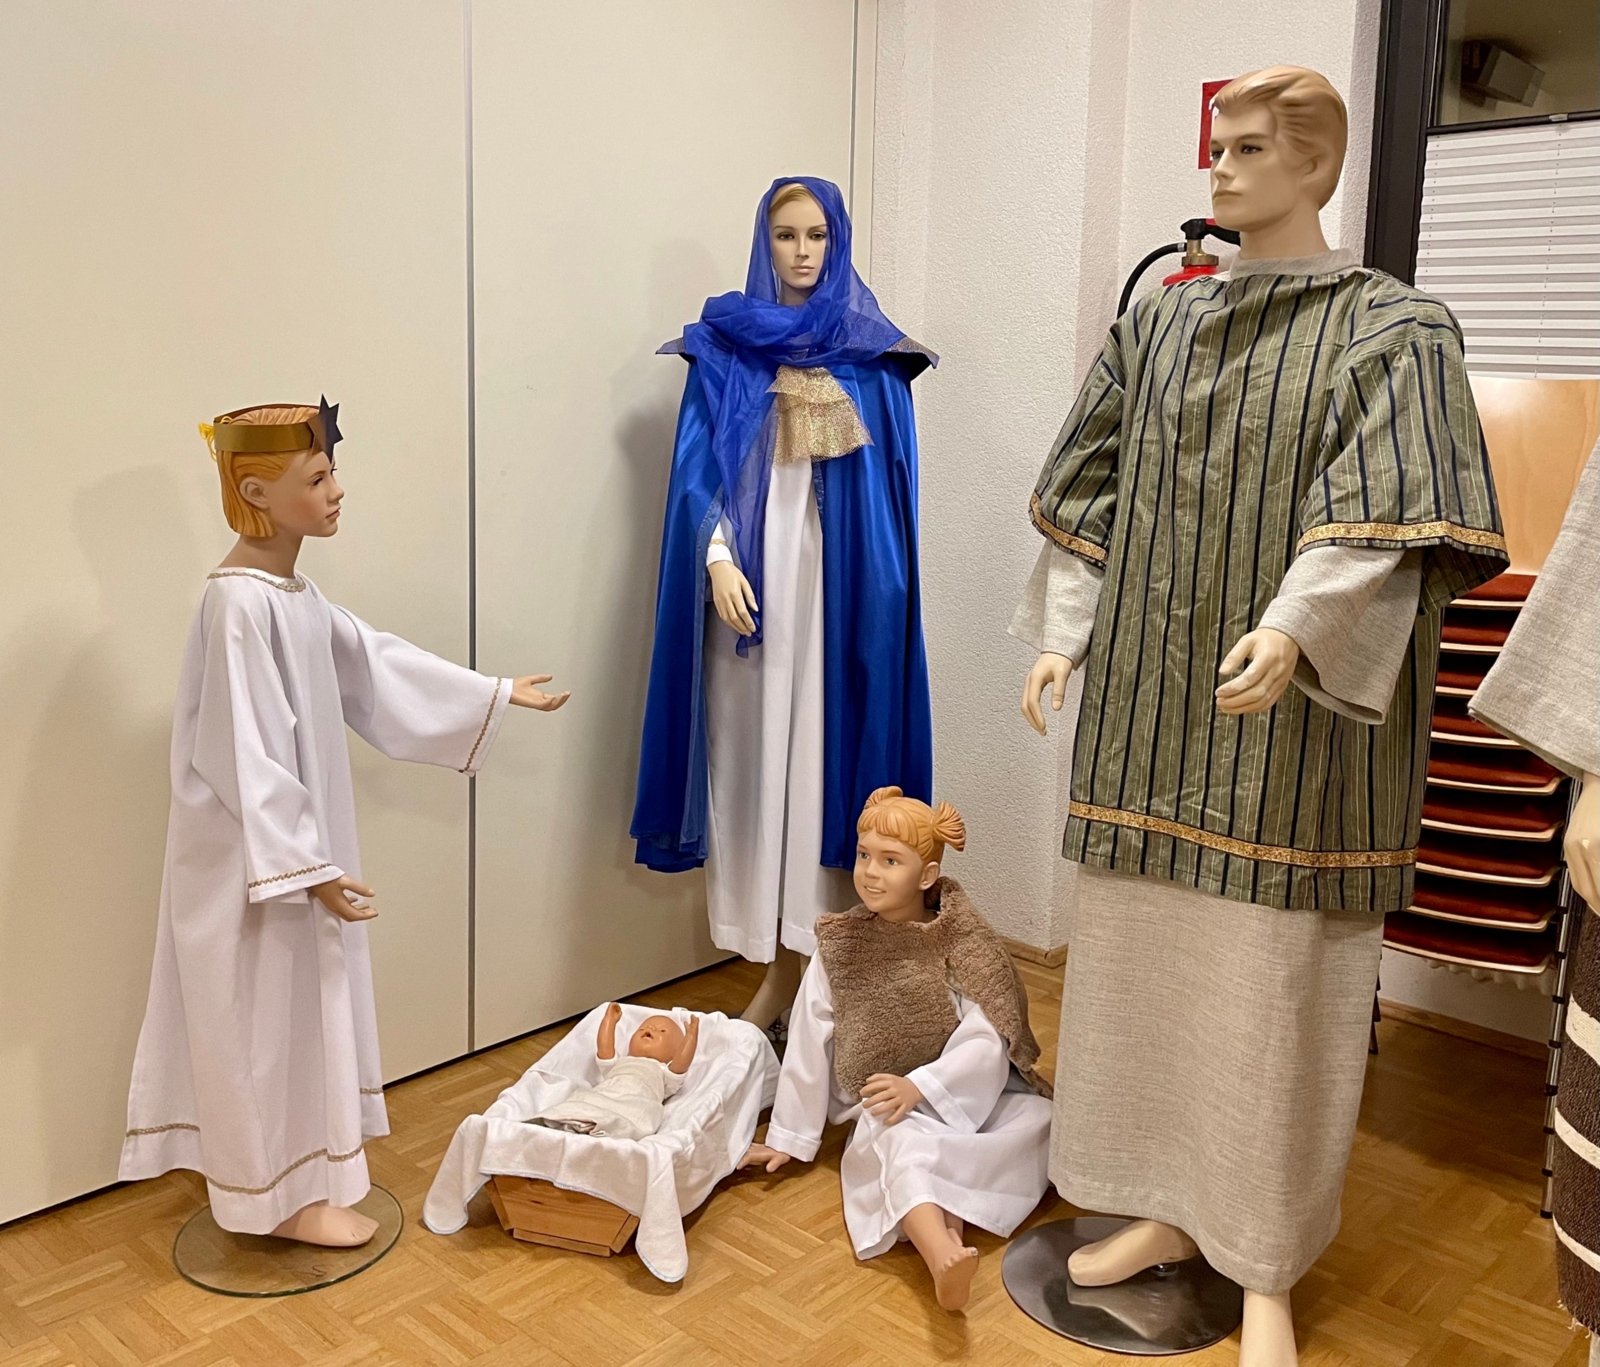 Puppen sind im Pfarrheim eingekleidet werden (c) Gabi Pöge